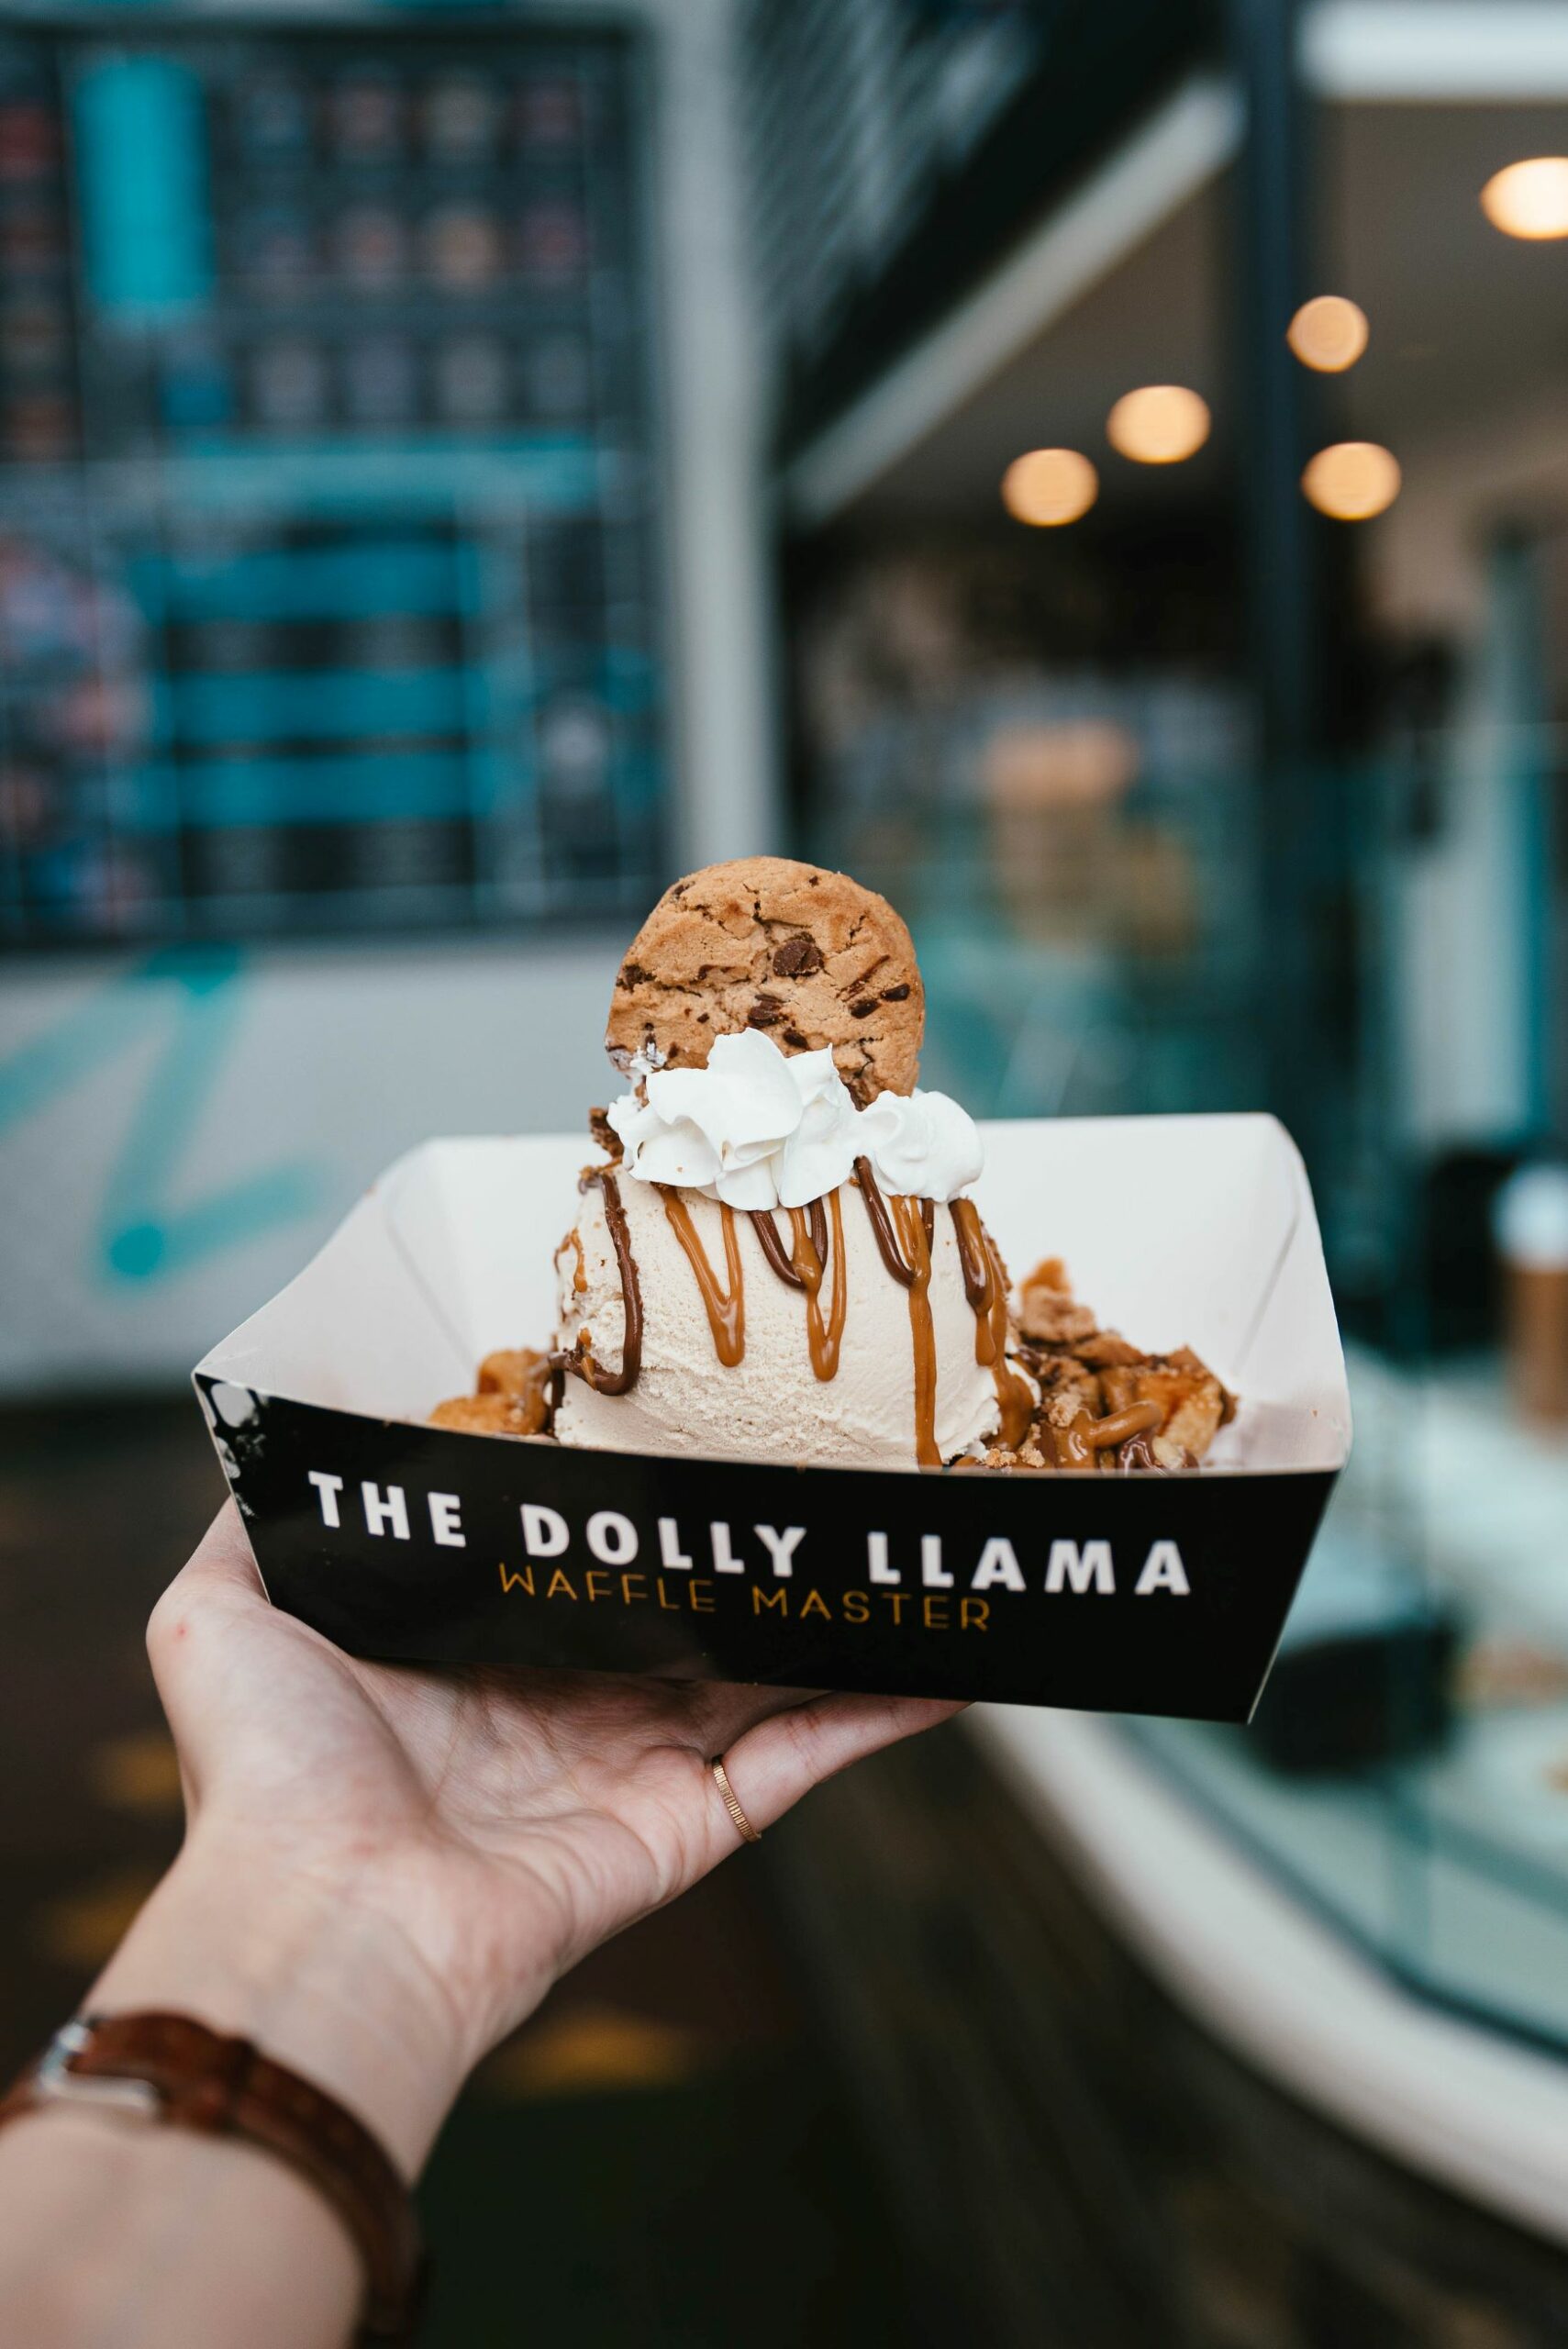 An image of the Dolly Llama Ice cream OG Waffle.